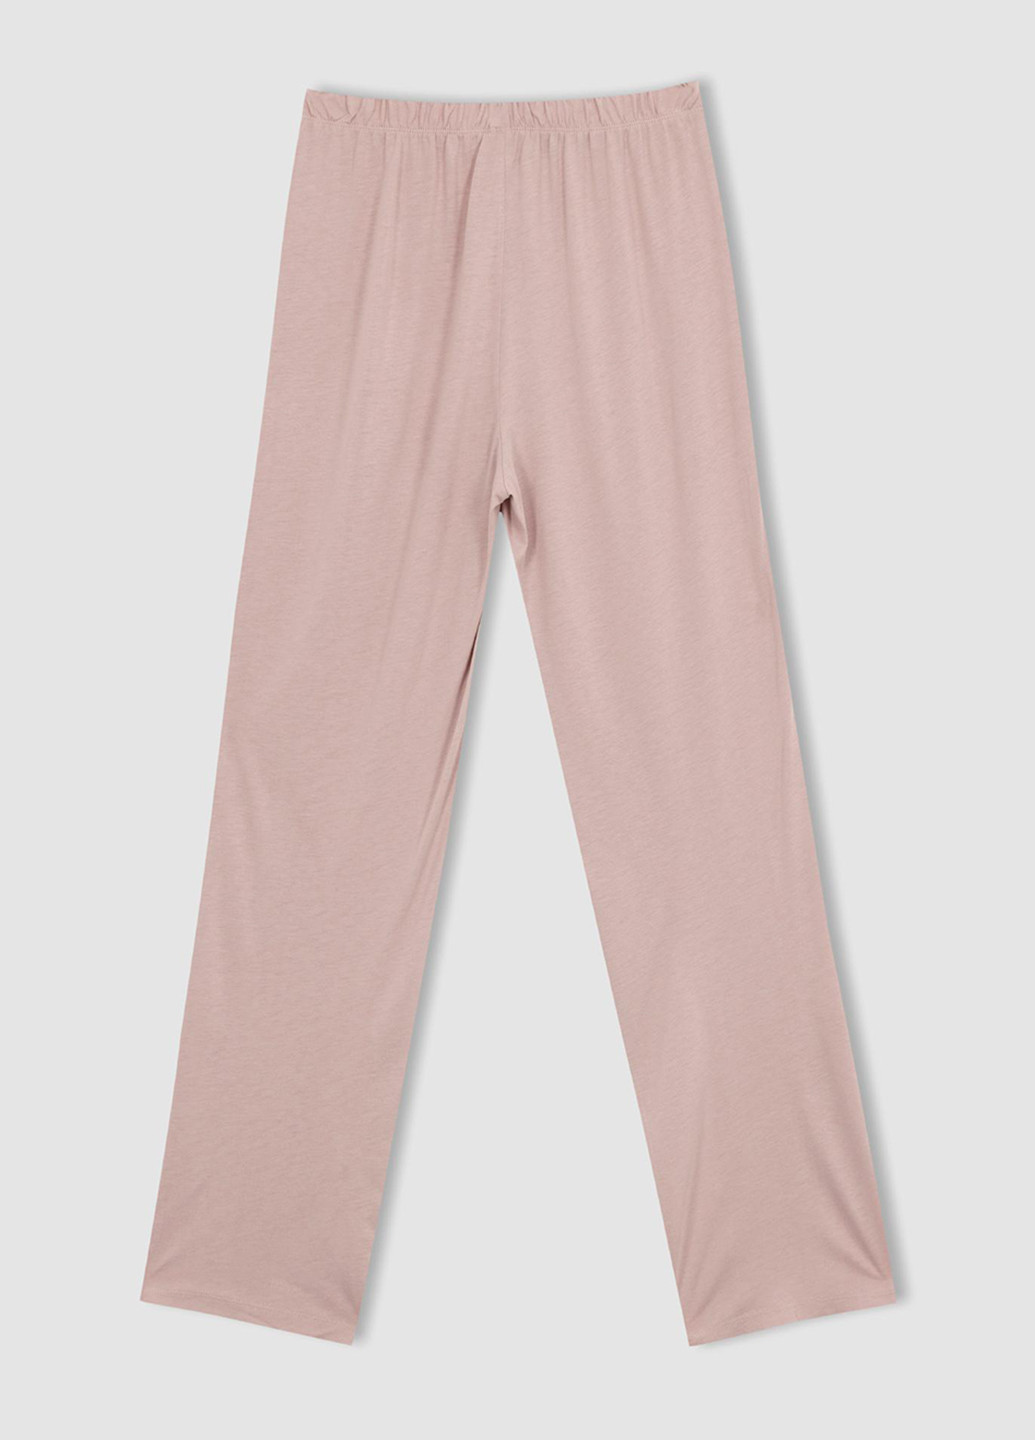 Розовая всесезон пижама (рубашка, брюки) рубашка + брюки DeFacto